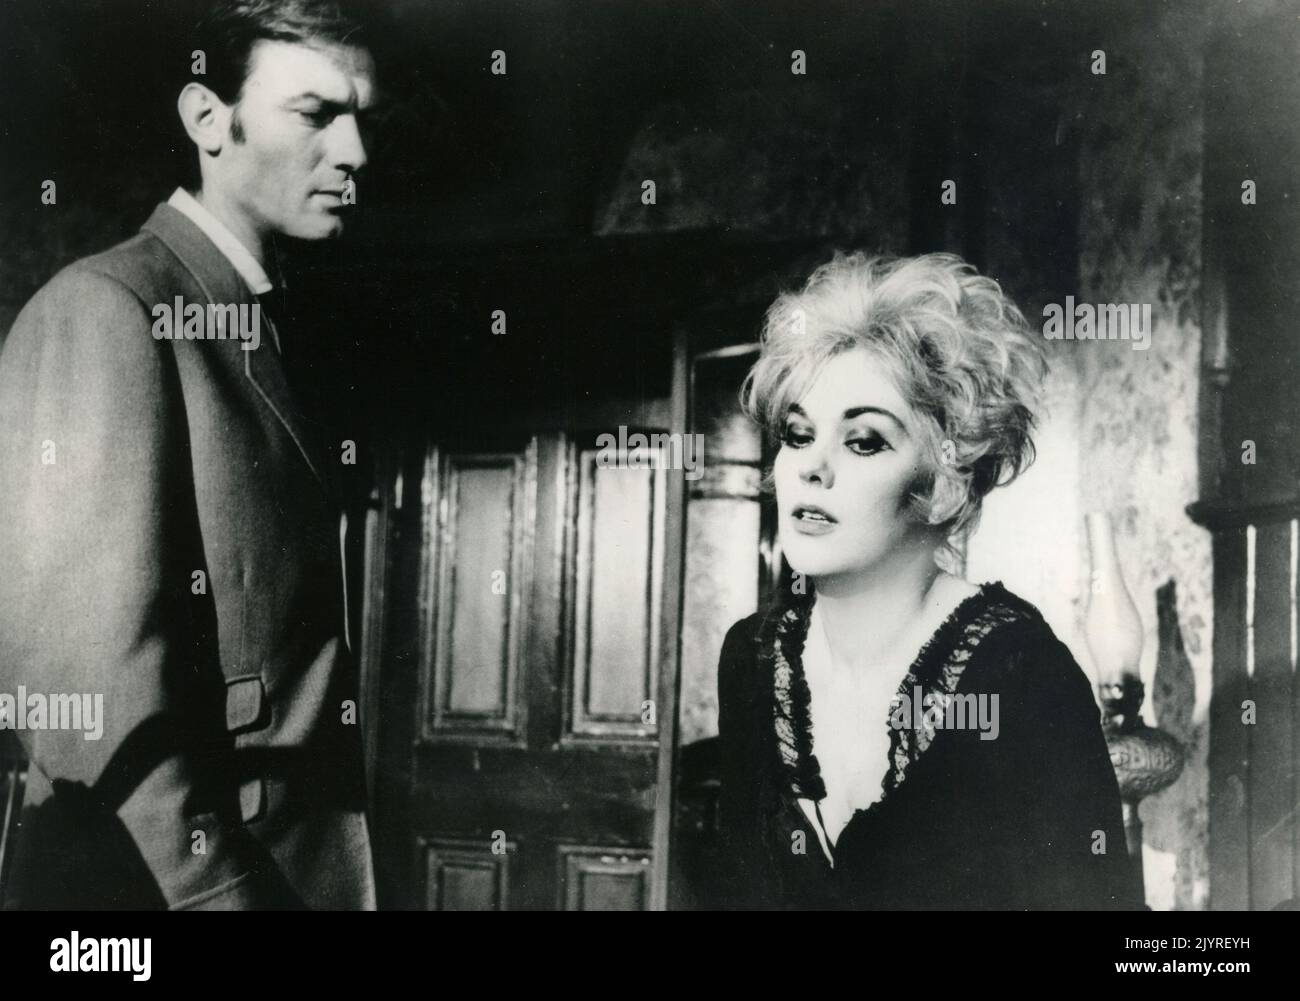 L'attore Laurence Harvey e l'attrice Kim Novak nel film di Human Bondage, Regno Unito 1964 Foto Stock